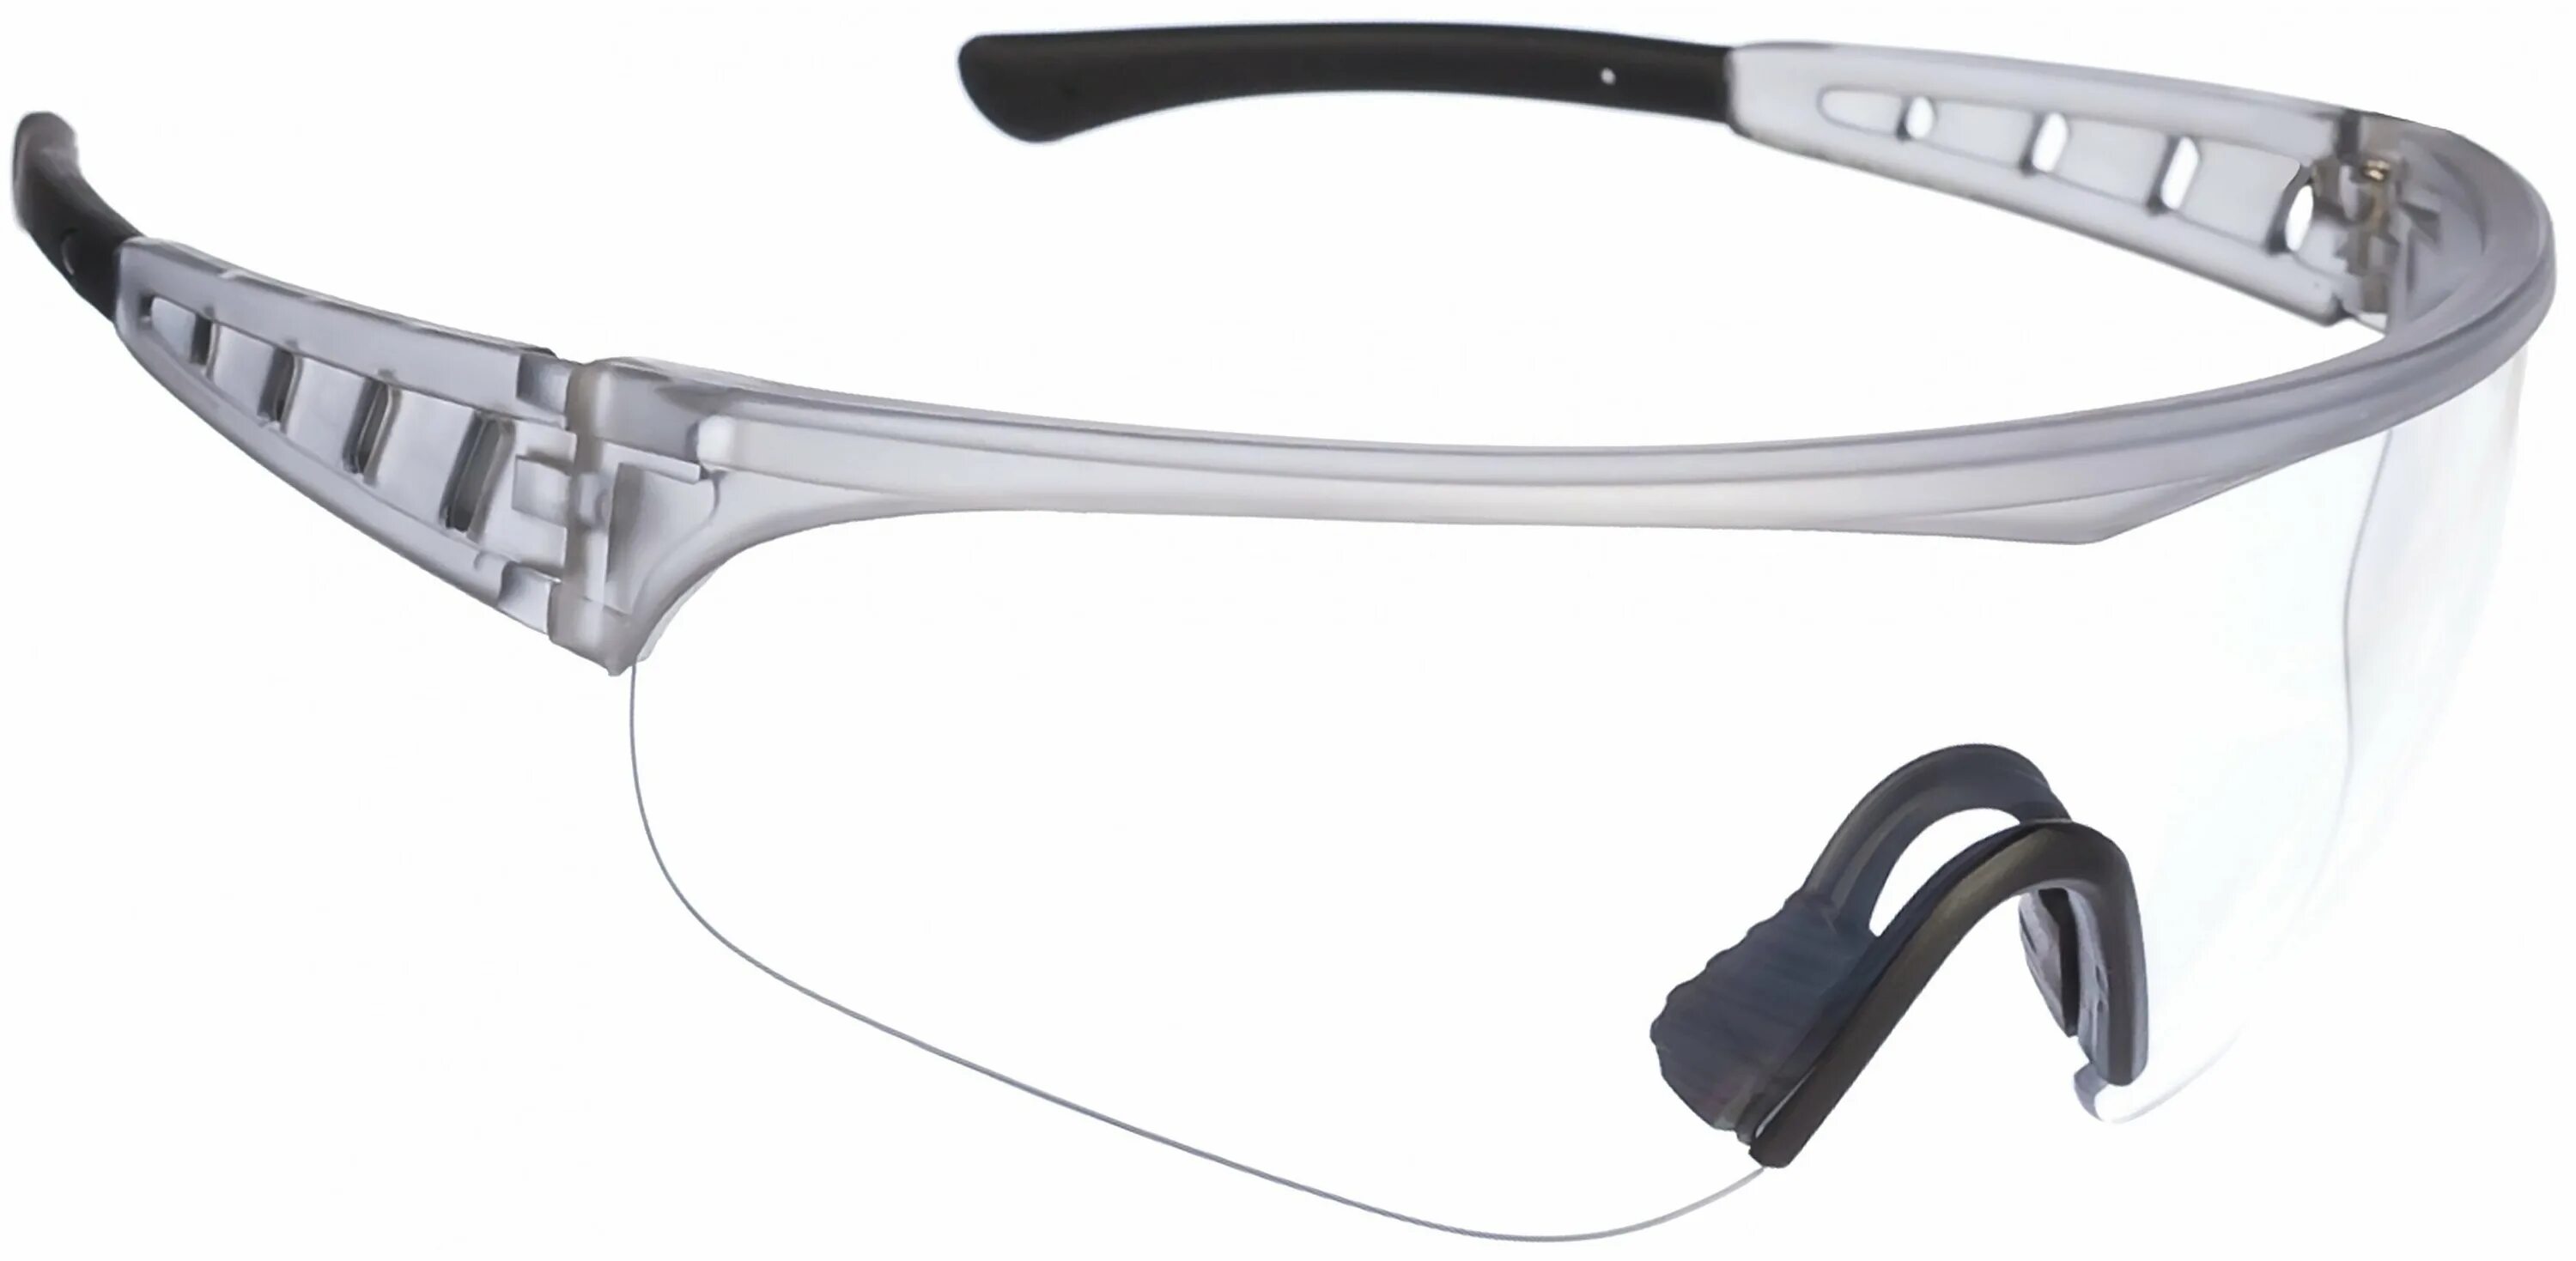 Очки защитные прозрачные поликарбонат. Очки Stayer Sport 2-110431. Защитные очки Stayer Standard. Защитные прозрачные очки Stayer Pro-x широкая монолинза, открытого типа. Очки защитные, поликарбонат закрытого типа Tolsen 45074.